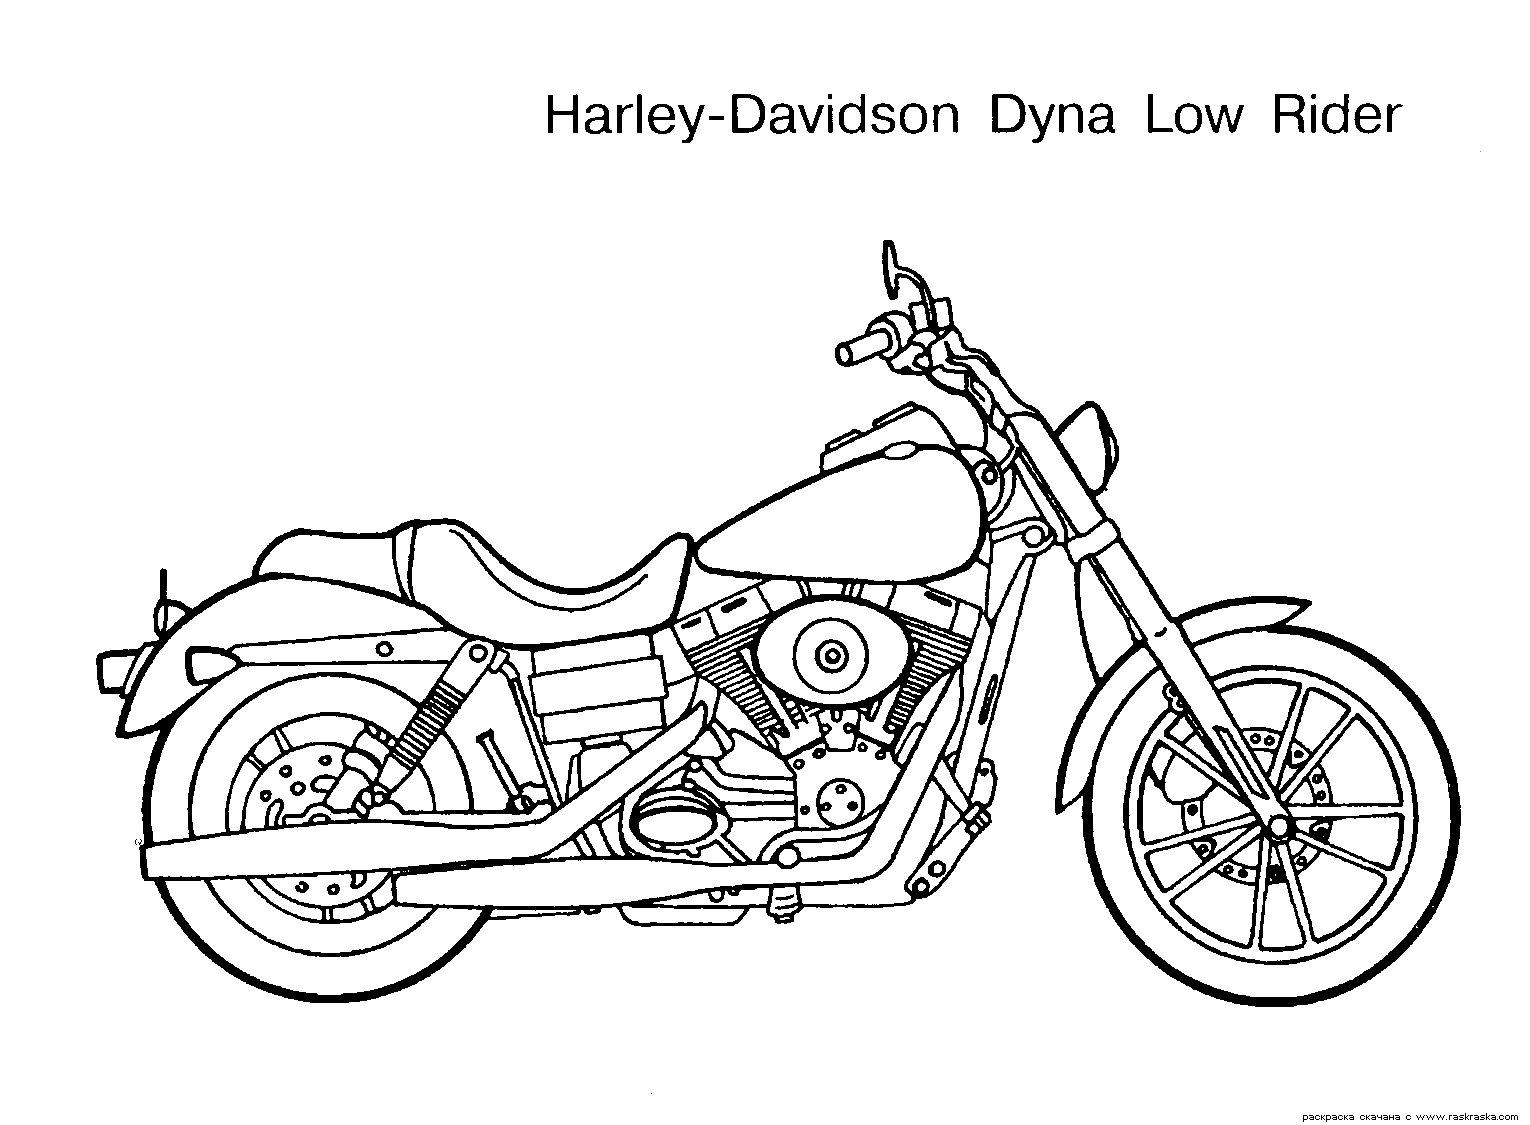 Desenho de Motocicleta cruiser para colorir